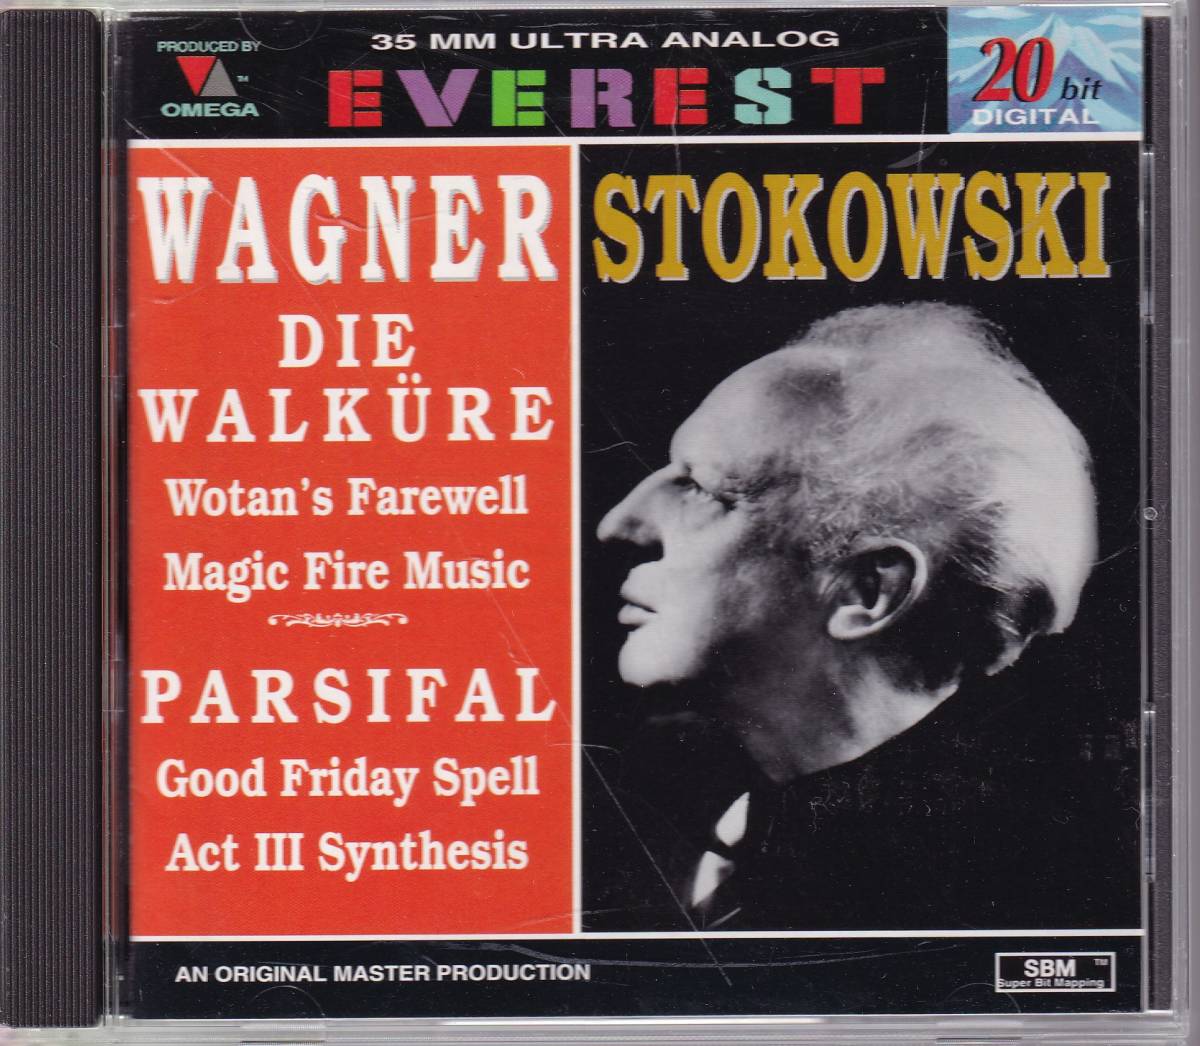 Коллекция оркестра Wagner Stokovsky [Everest Pole Beauty]